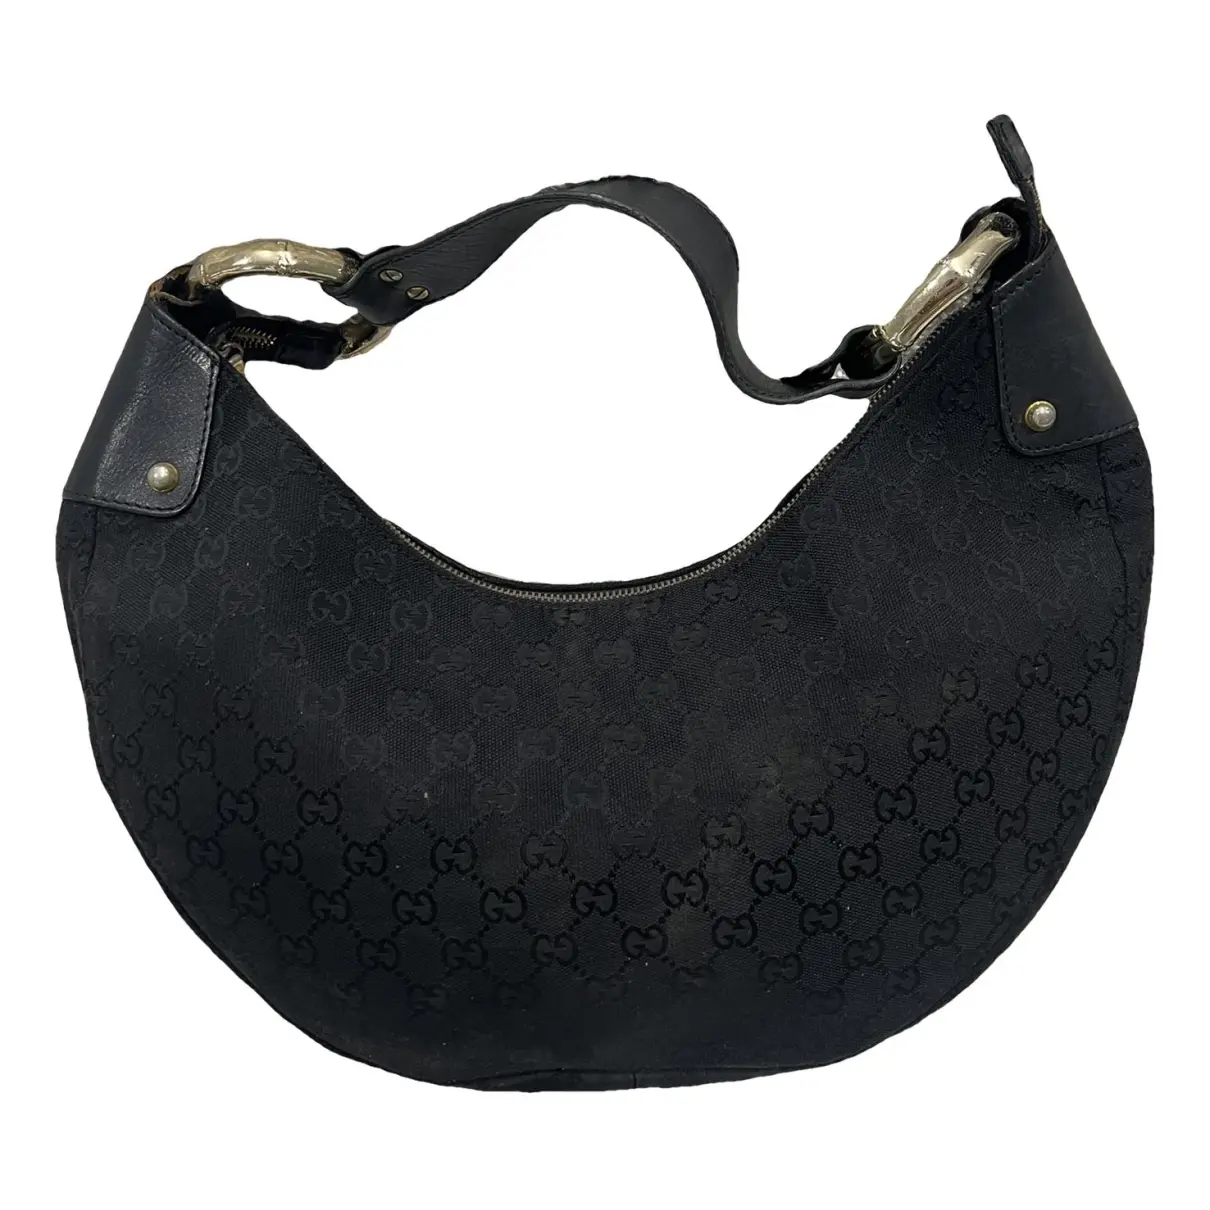 Bamboo Ring cloth handbag